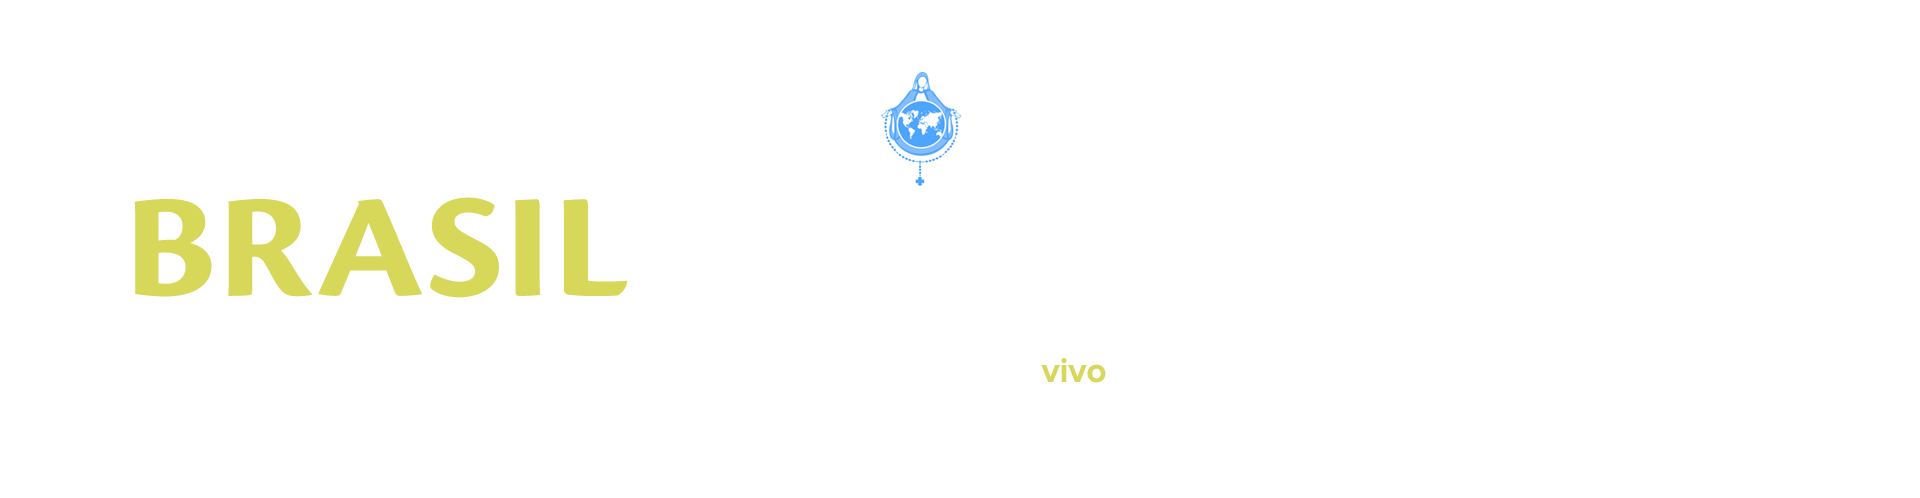 pt_opn_proposito_espiritual_do_brasil_banner.png